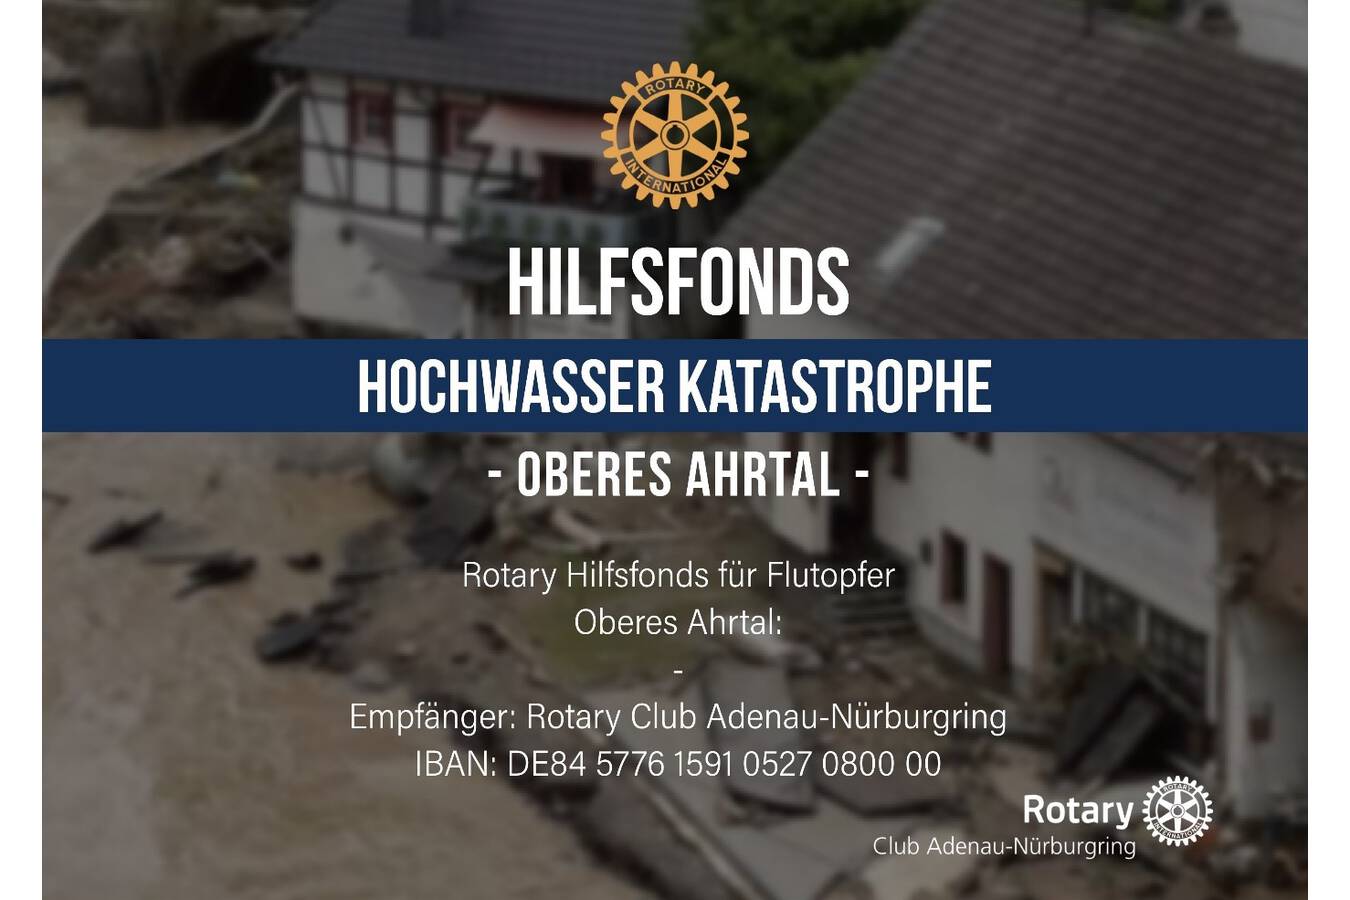 Gemeinsam nach den Überschwemmungen in der Eifel und im Ahrtal SolidAHRität; Die Köllemann GmbH hat einen großzügigen Betrag an den Rotary-Hilfsfonds für die Flutopfer gespendet.